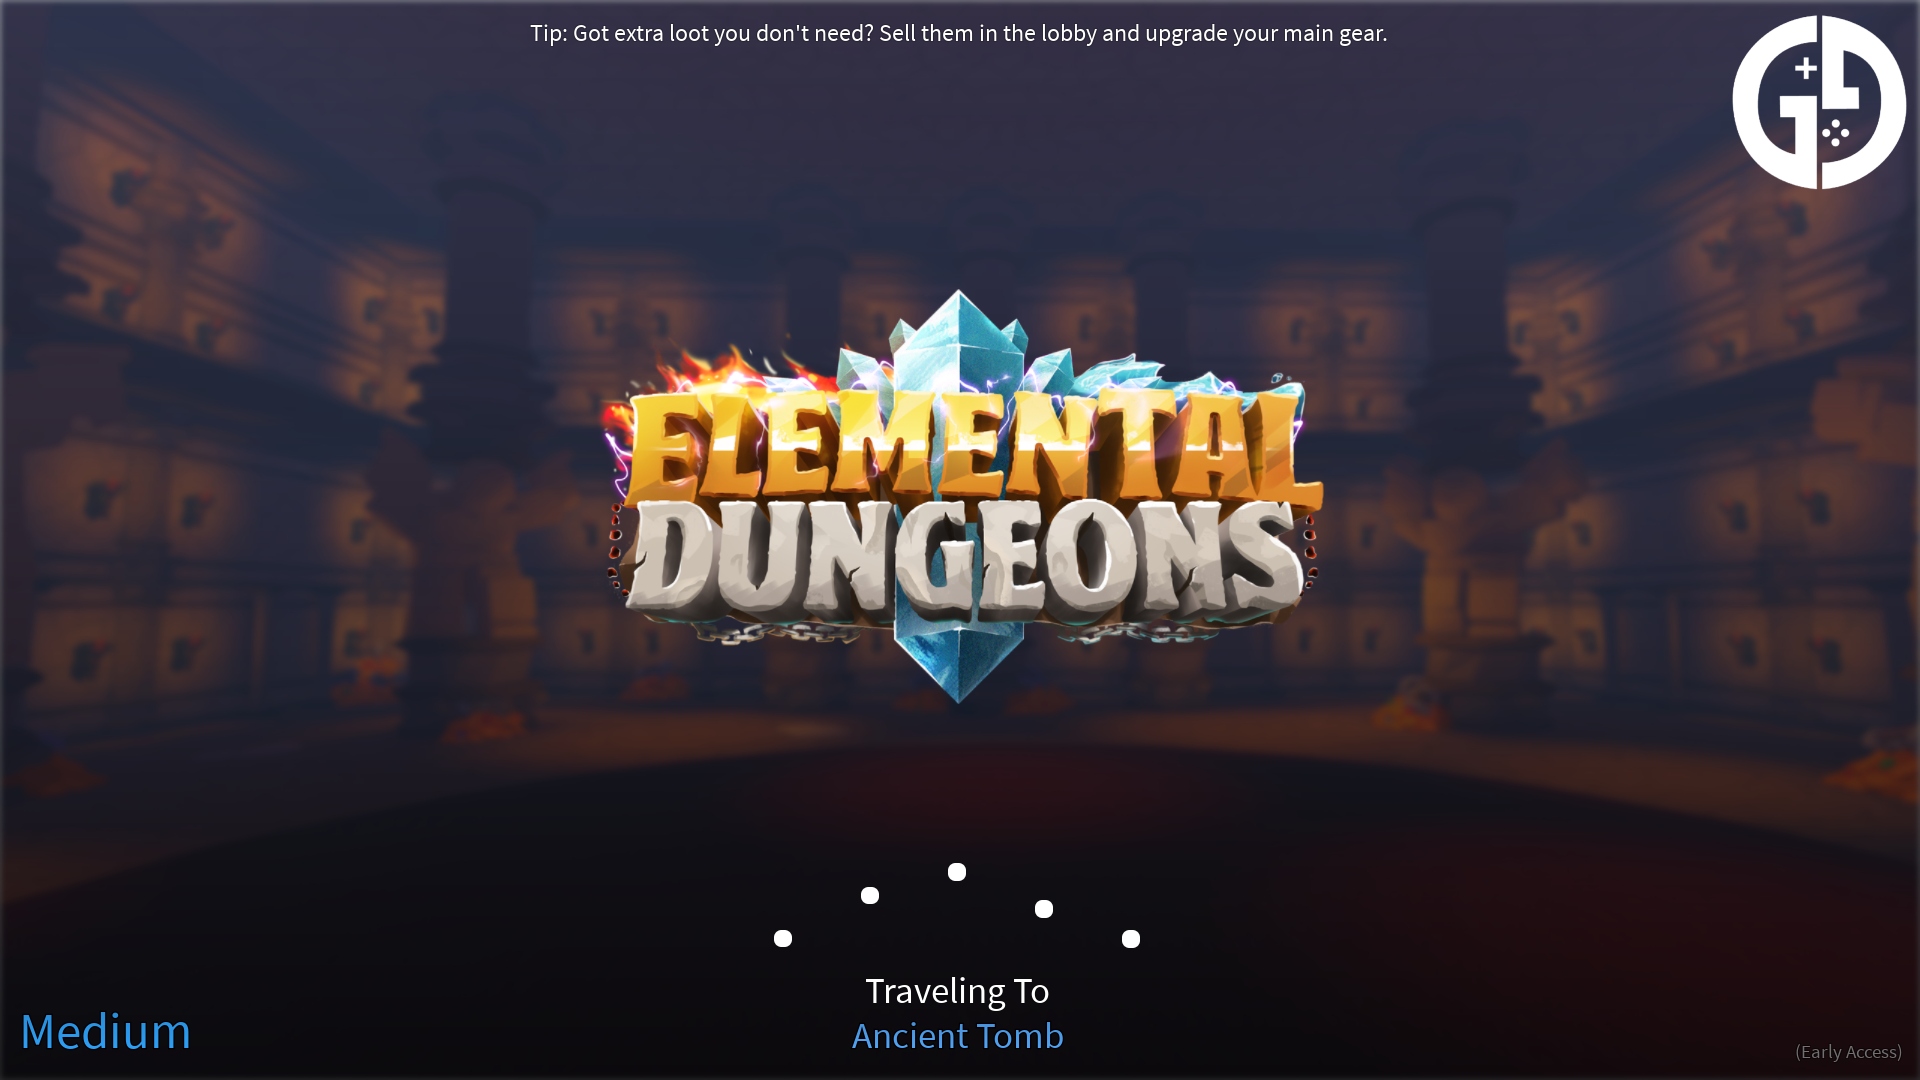 Elemental Dungeons Codes – Roblox December 2023 